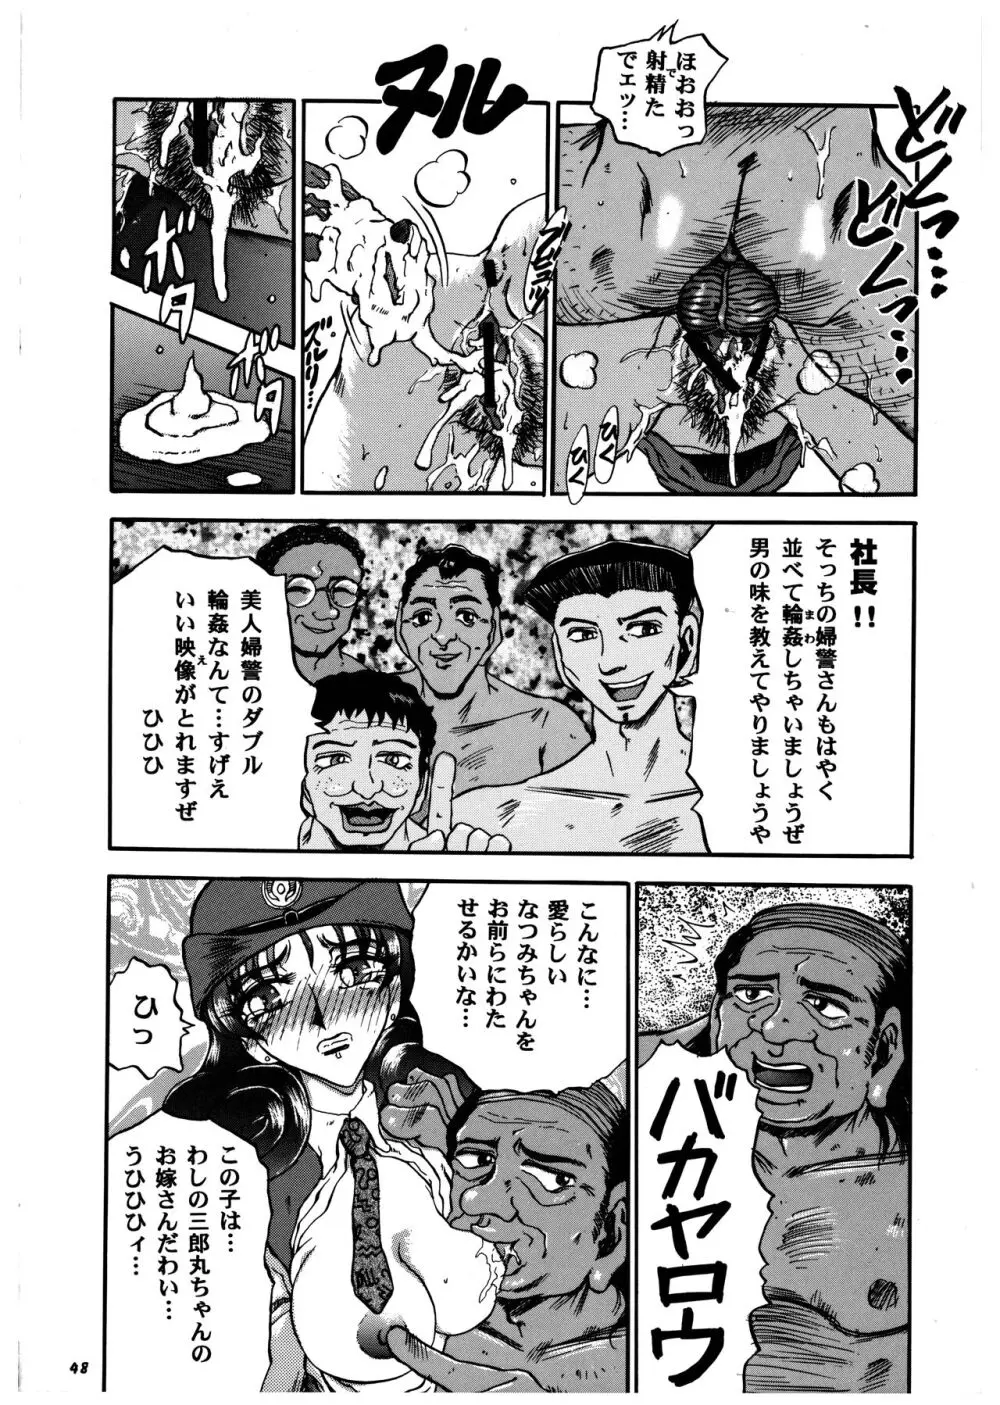 桃庵 vol.3 - page48